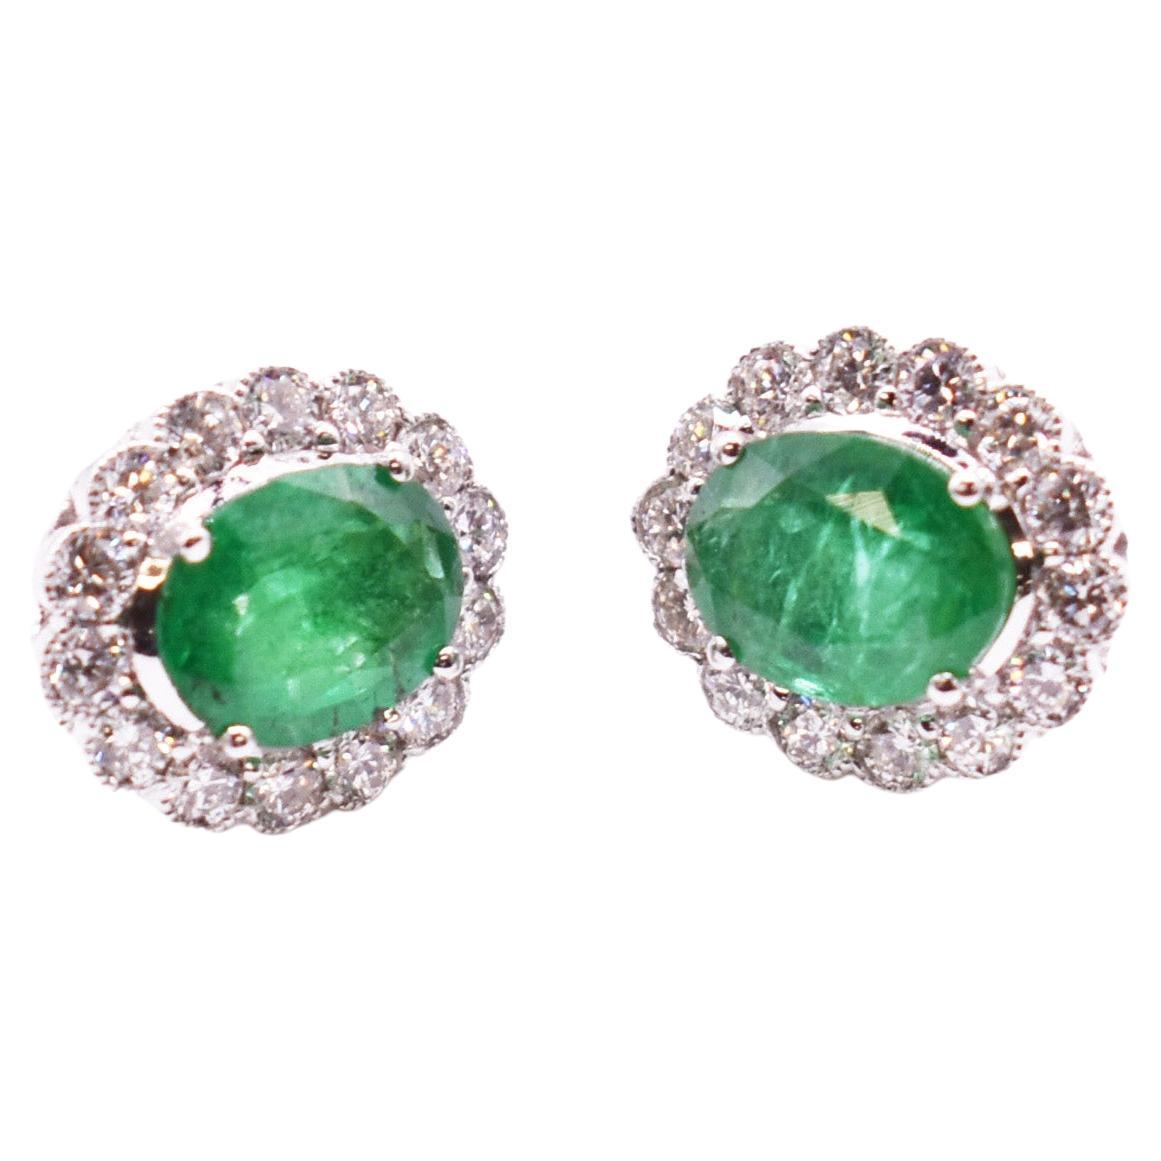 Pair of 18k White Gold Emerald & Diamond Earrings For Sale